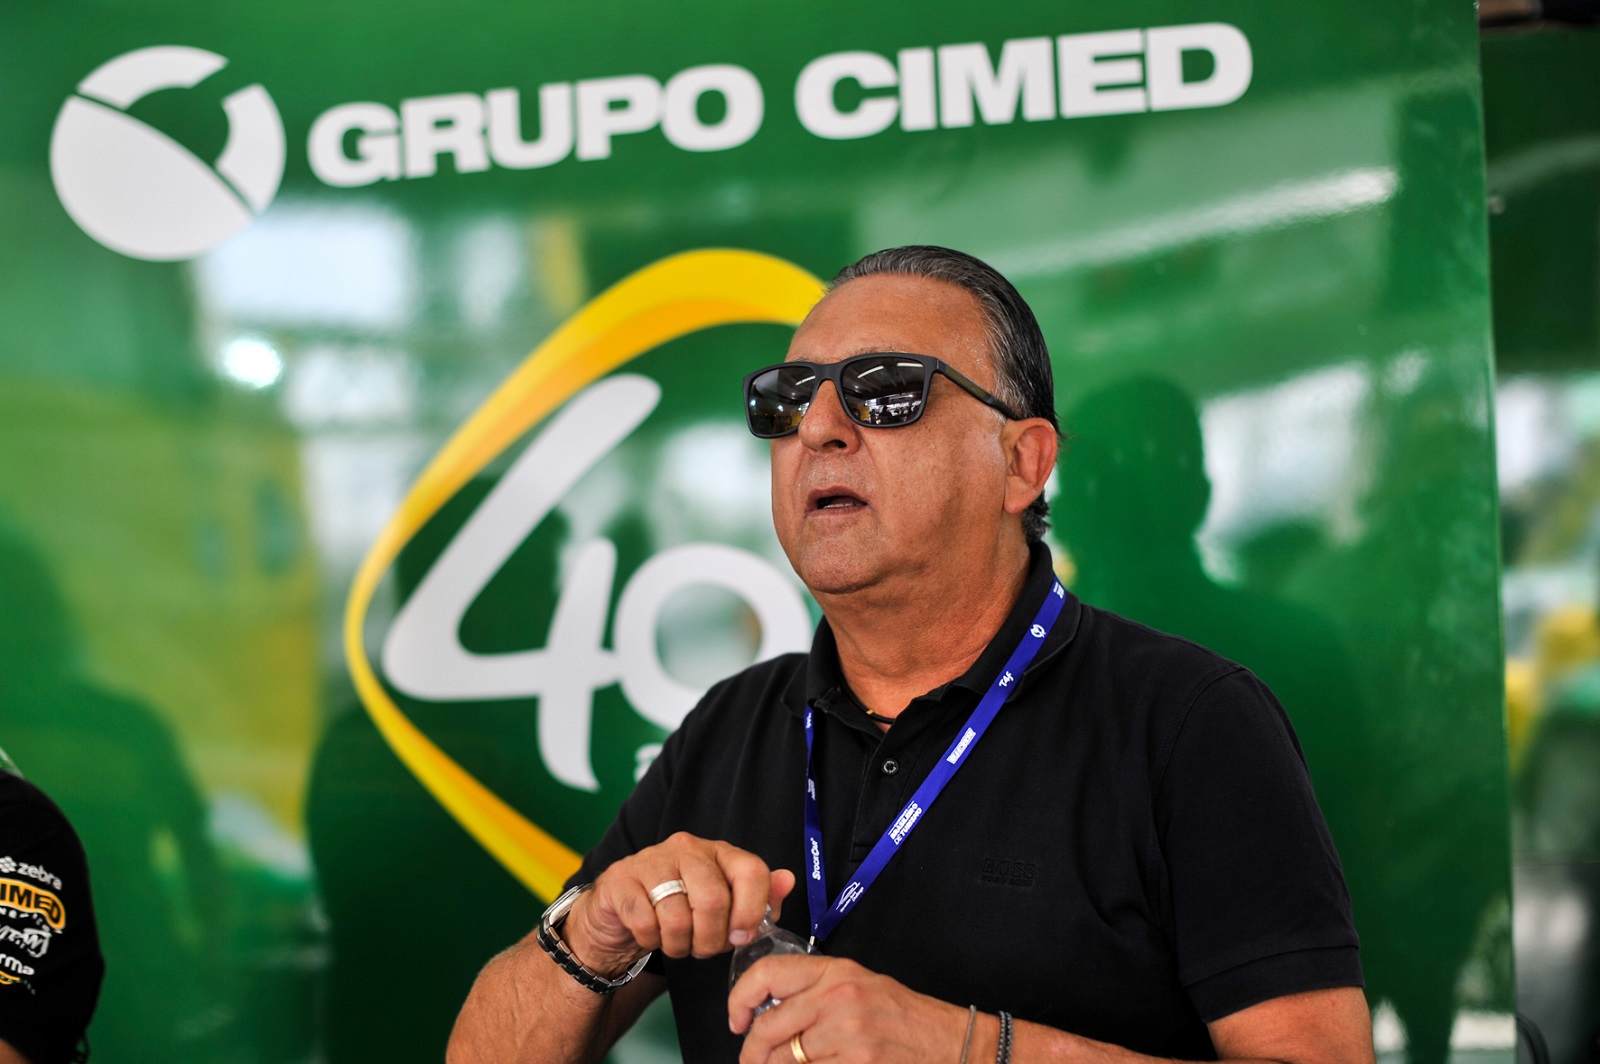 Recentemente, Galvão voltou a narrar a Stock Car. Em 2019, após 15 anos afastado, participou da Corrida do Milhão